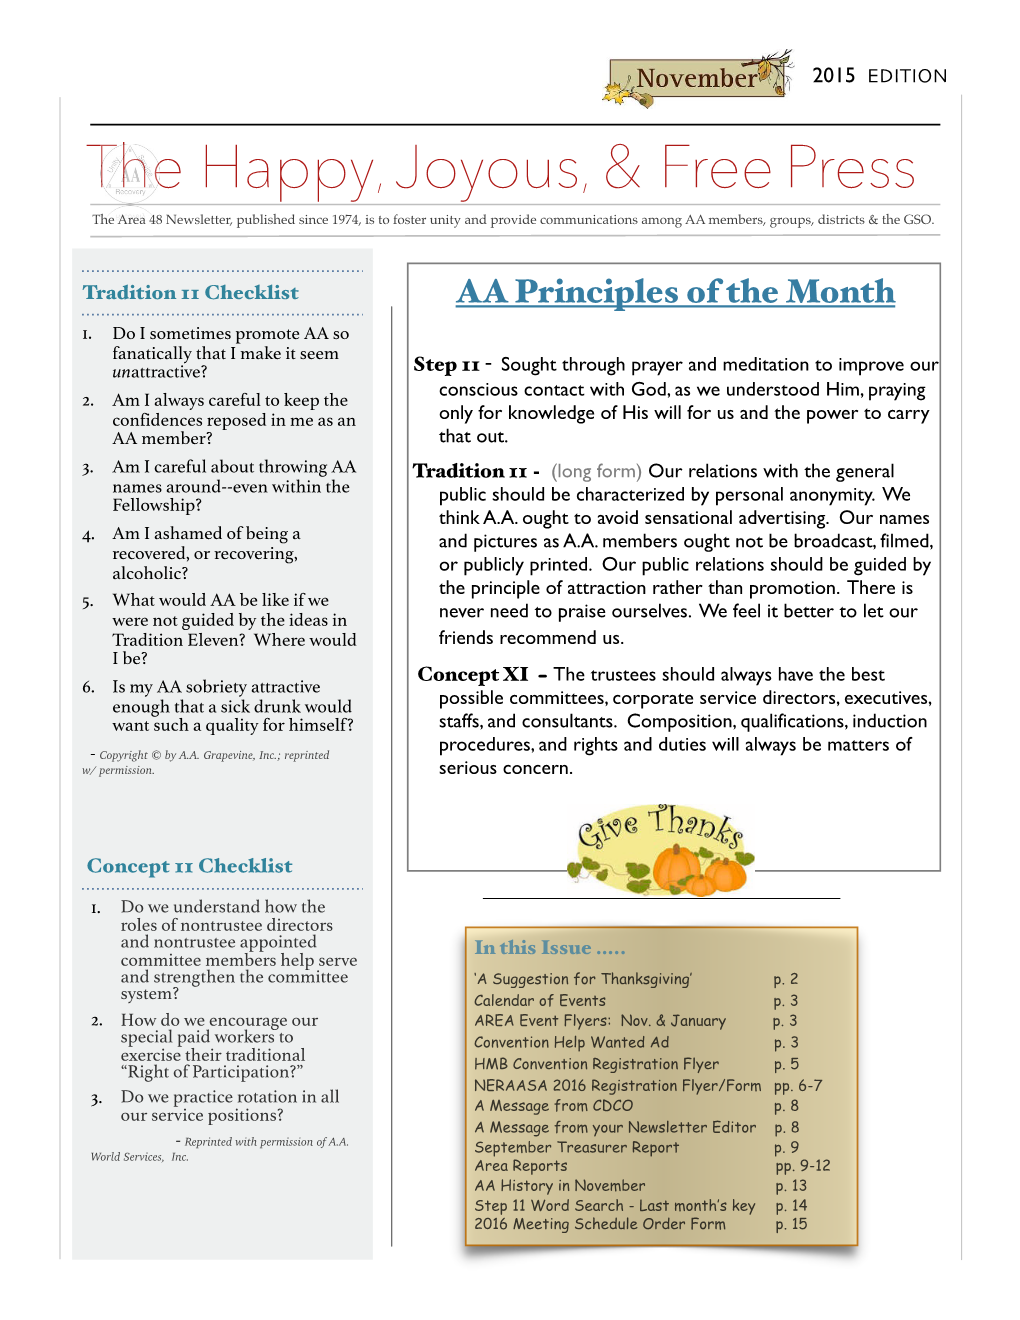 November Edition "Happy, Joyous, & Free Press" for Website